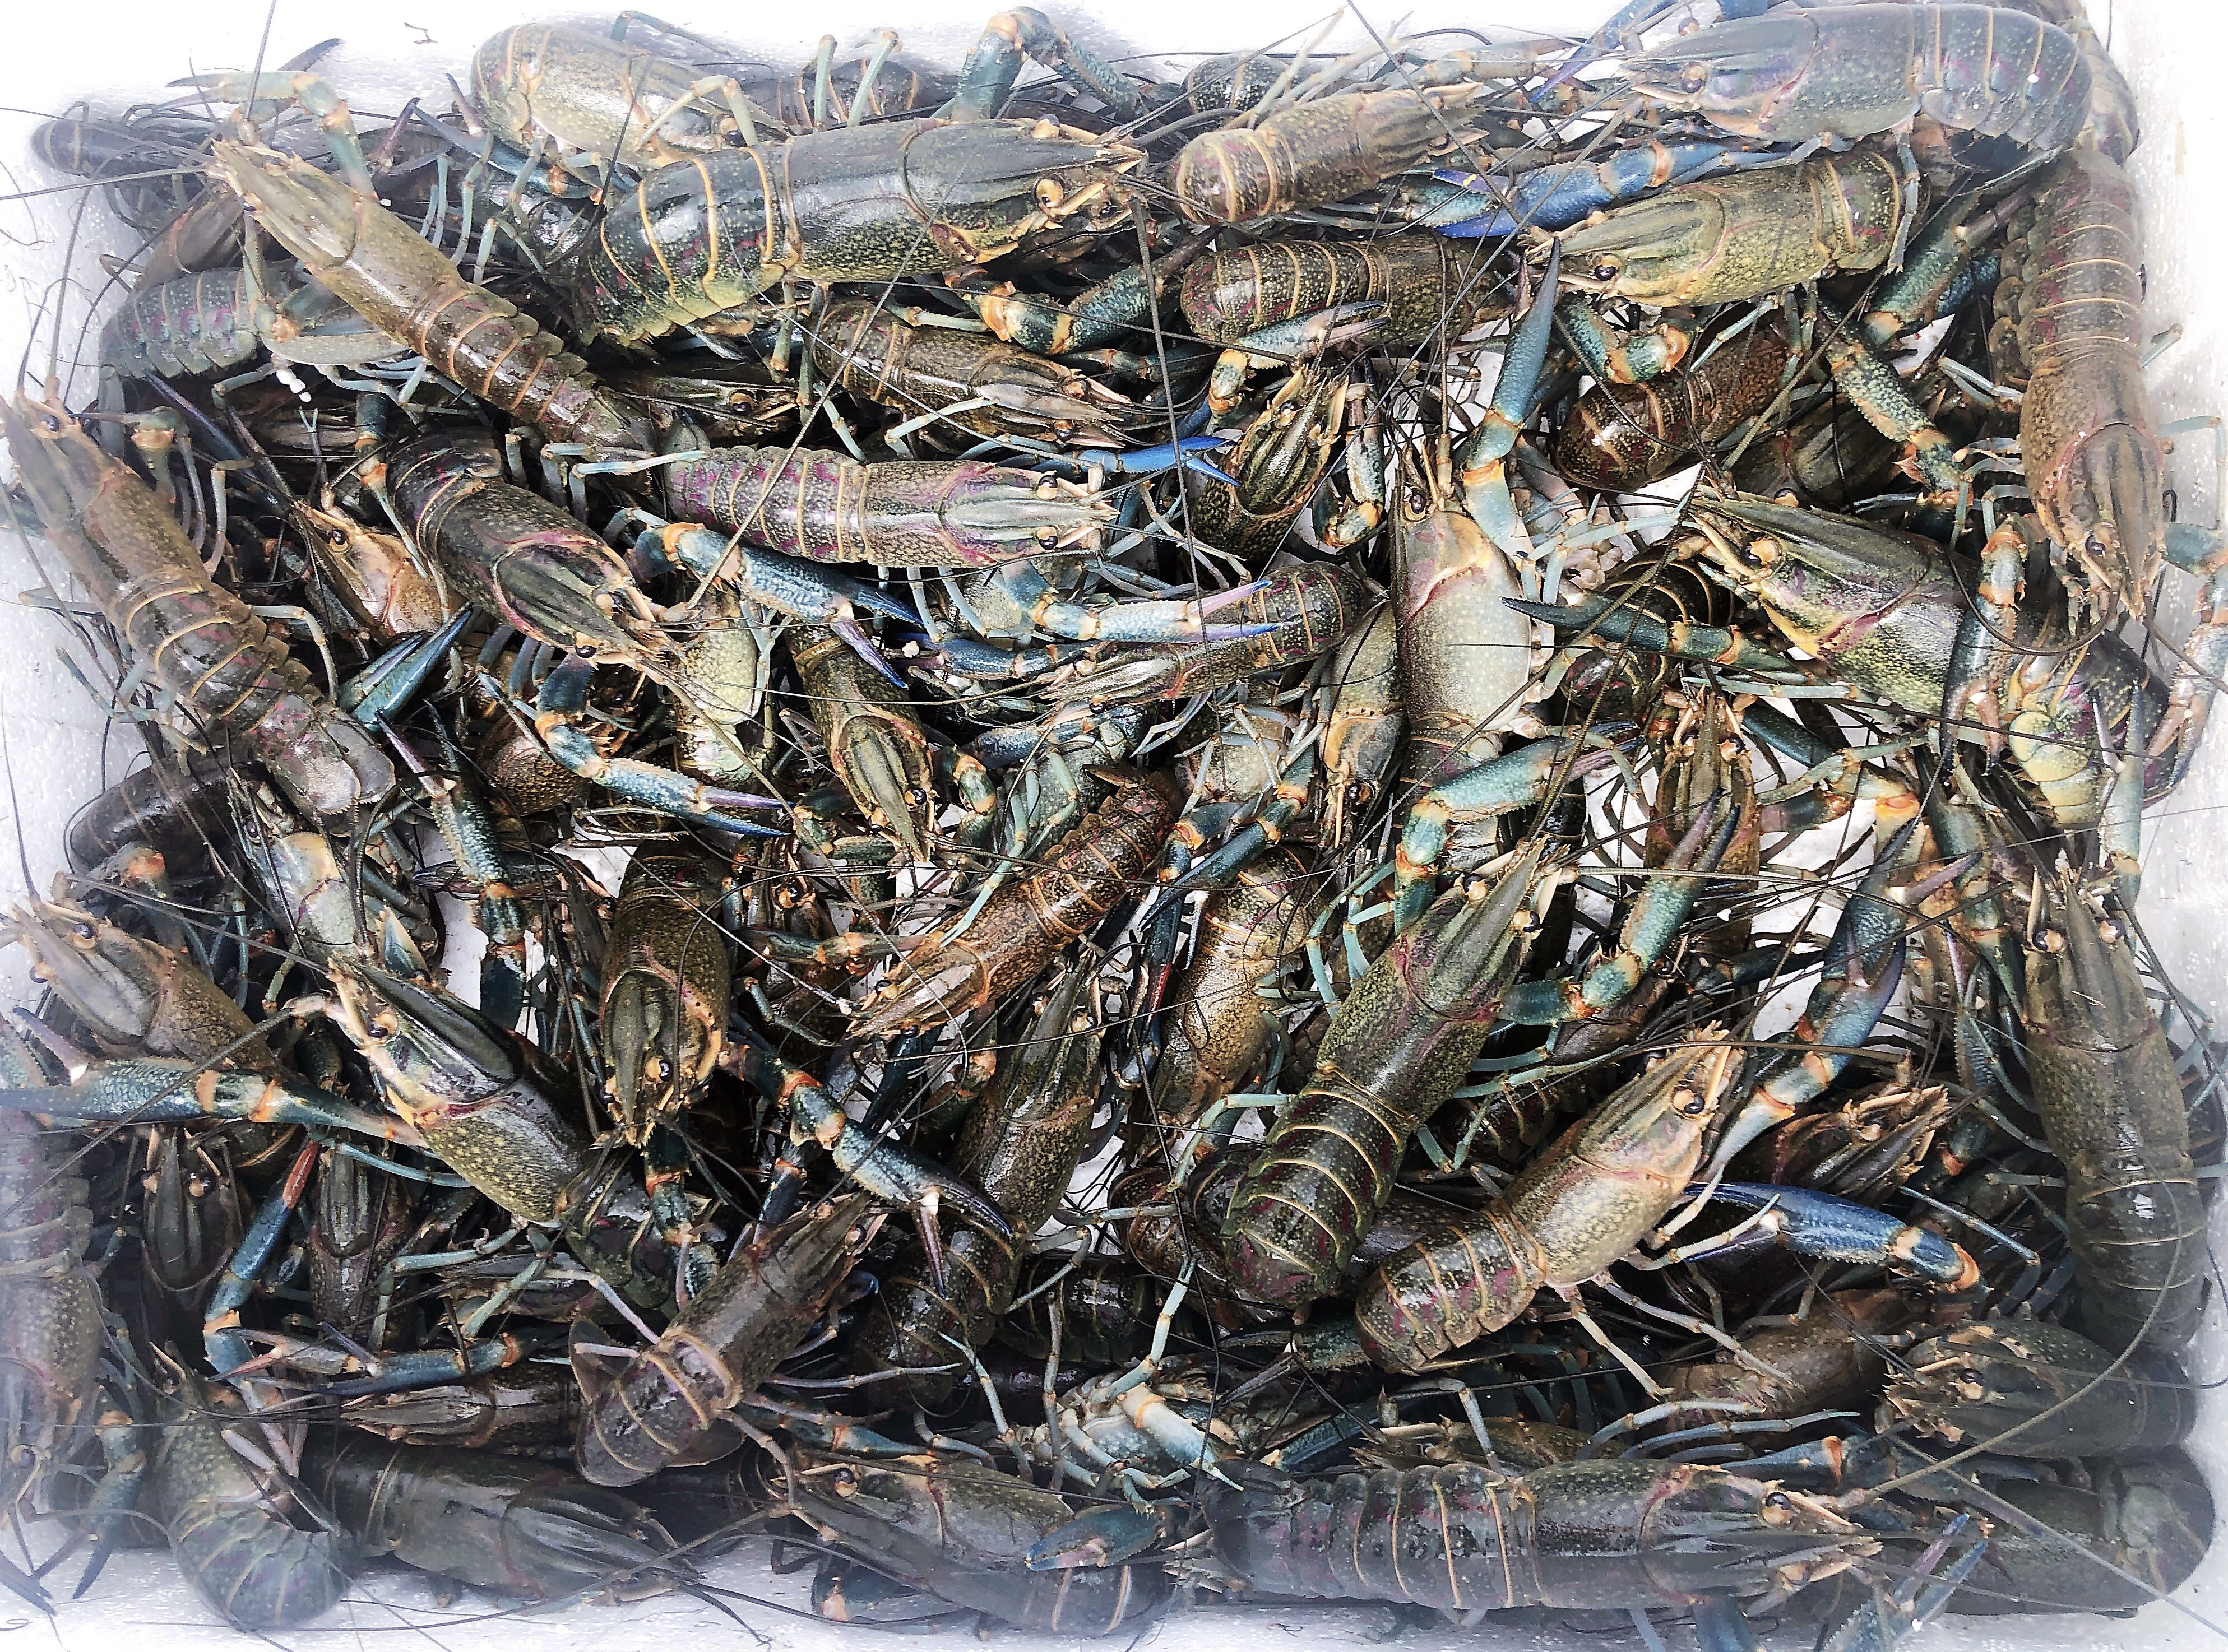 淡水澳龙成品虾张先生是湖北洪湖市的一名养殖户,有着多年养殖小龙虾